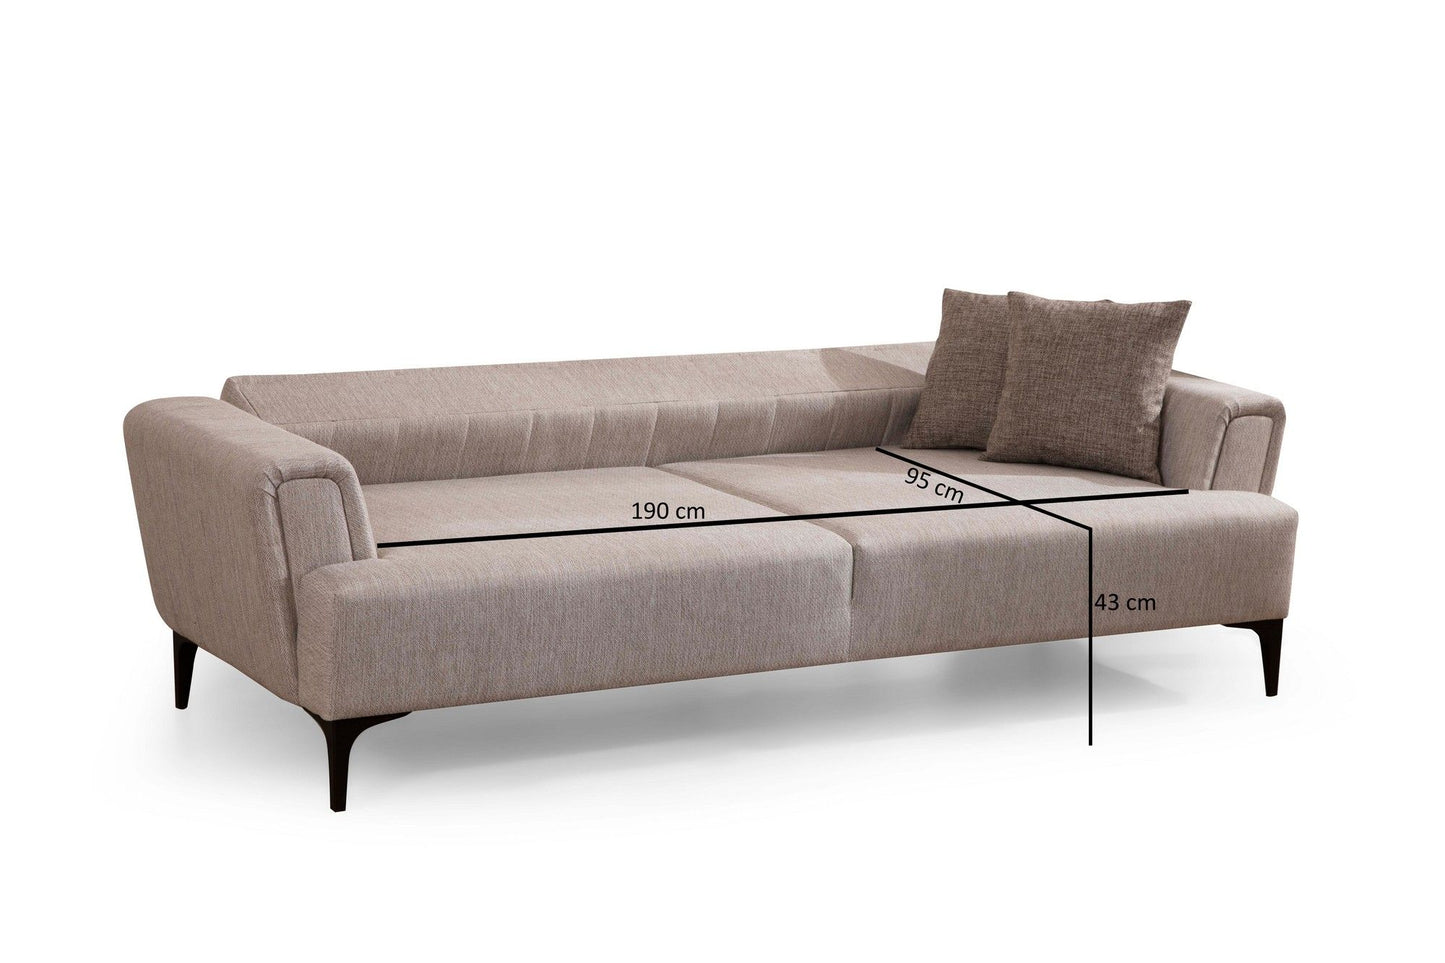 Hamlet - Beige - 3-Seat Sofa-Bed